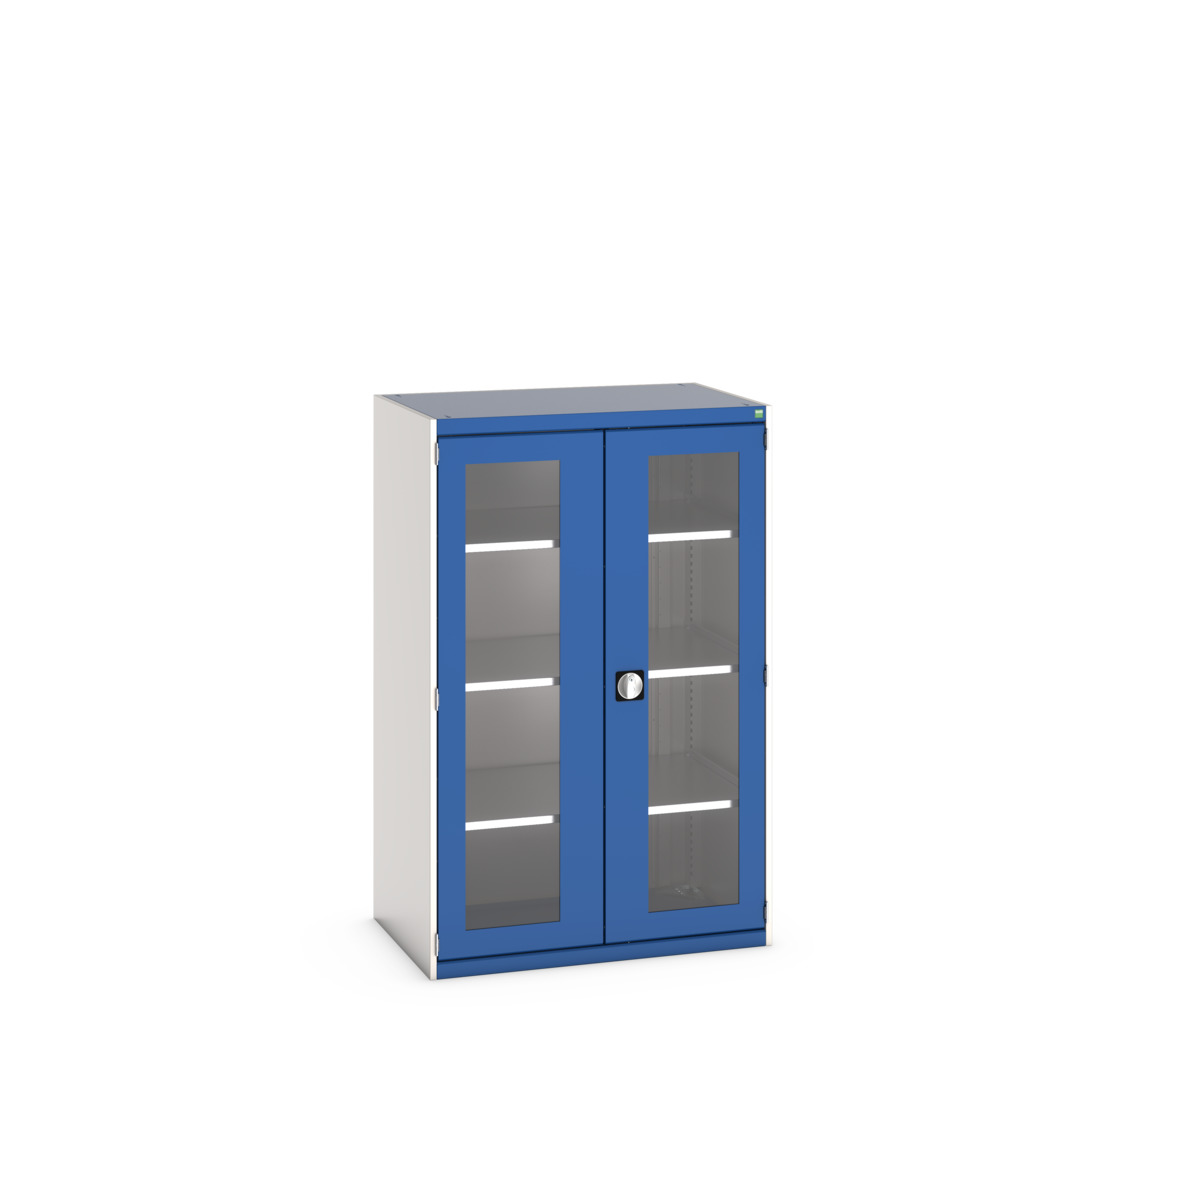 40021132.11V - cubio cupboard